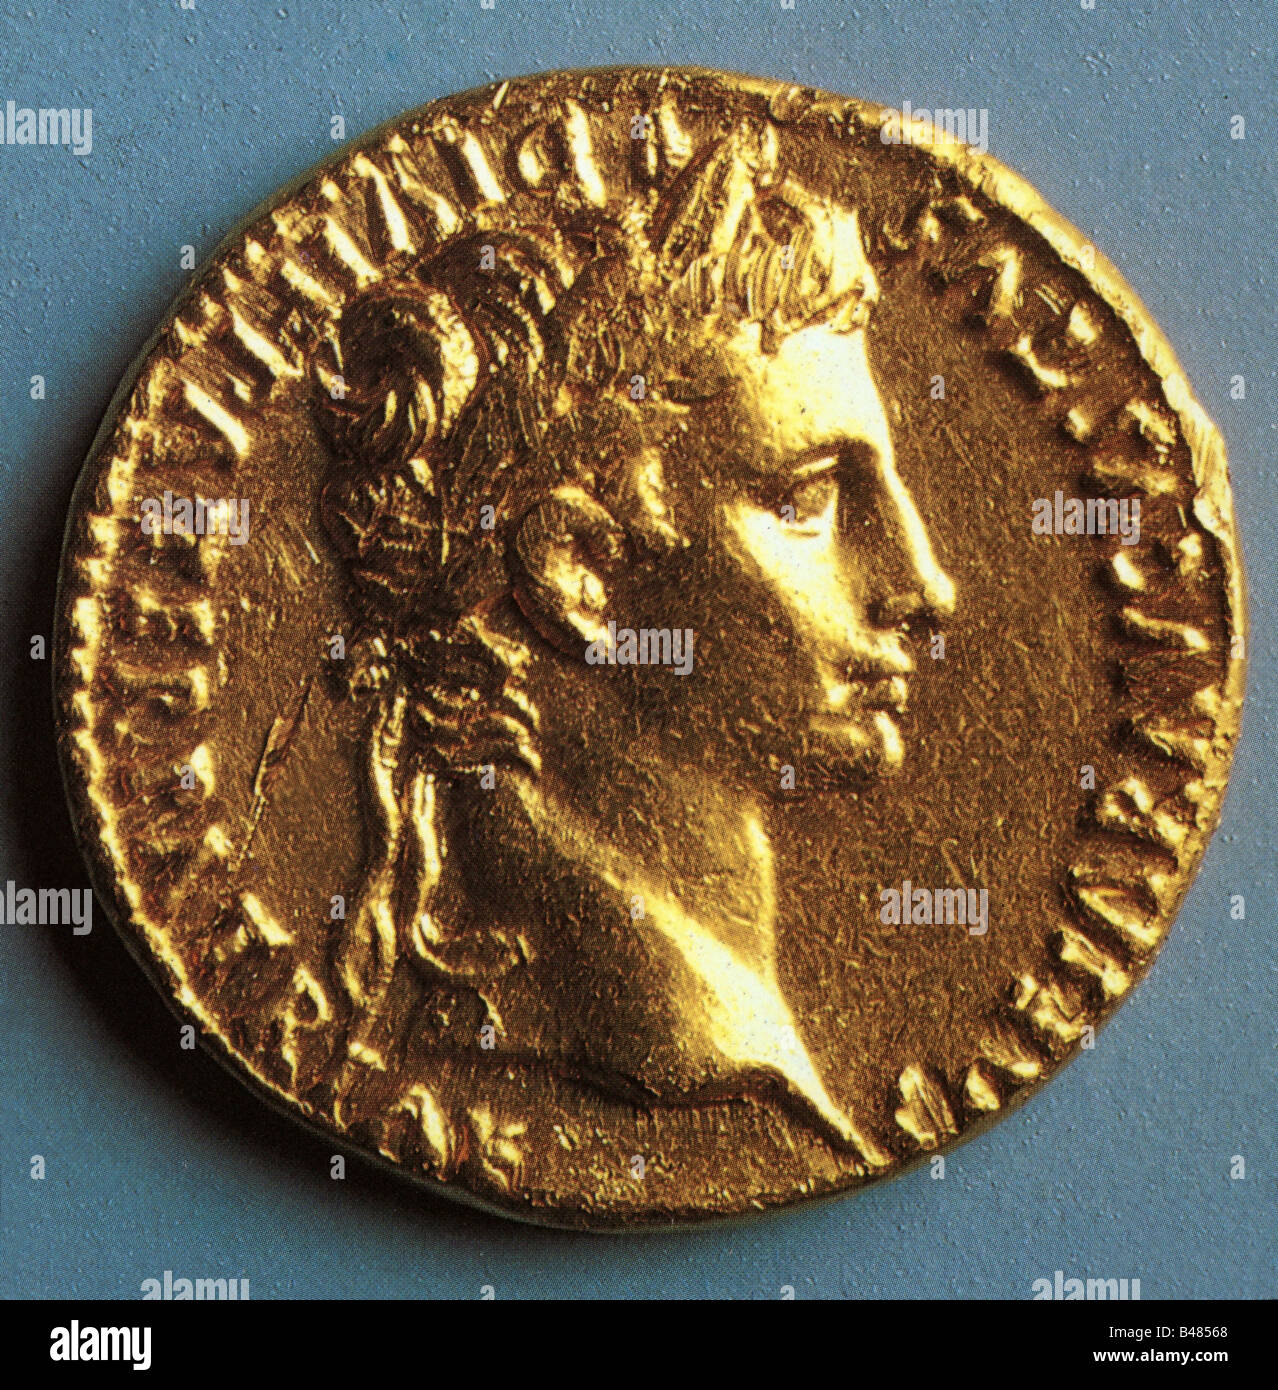 Augustus (Imperator César Augustus), 23.9.63 BC - 19.8.14 AD, empereur romain 13.1.27 BC - 19.8.14 AD, portrait, vue latérale, pièce de monnaie, or (aureus), Musée d'Histoire culturelle Osnabrück, Banque D'Images